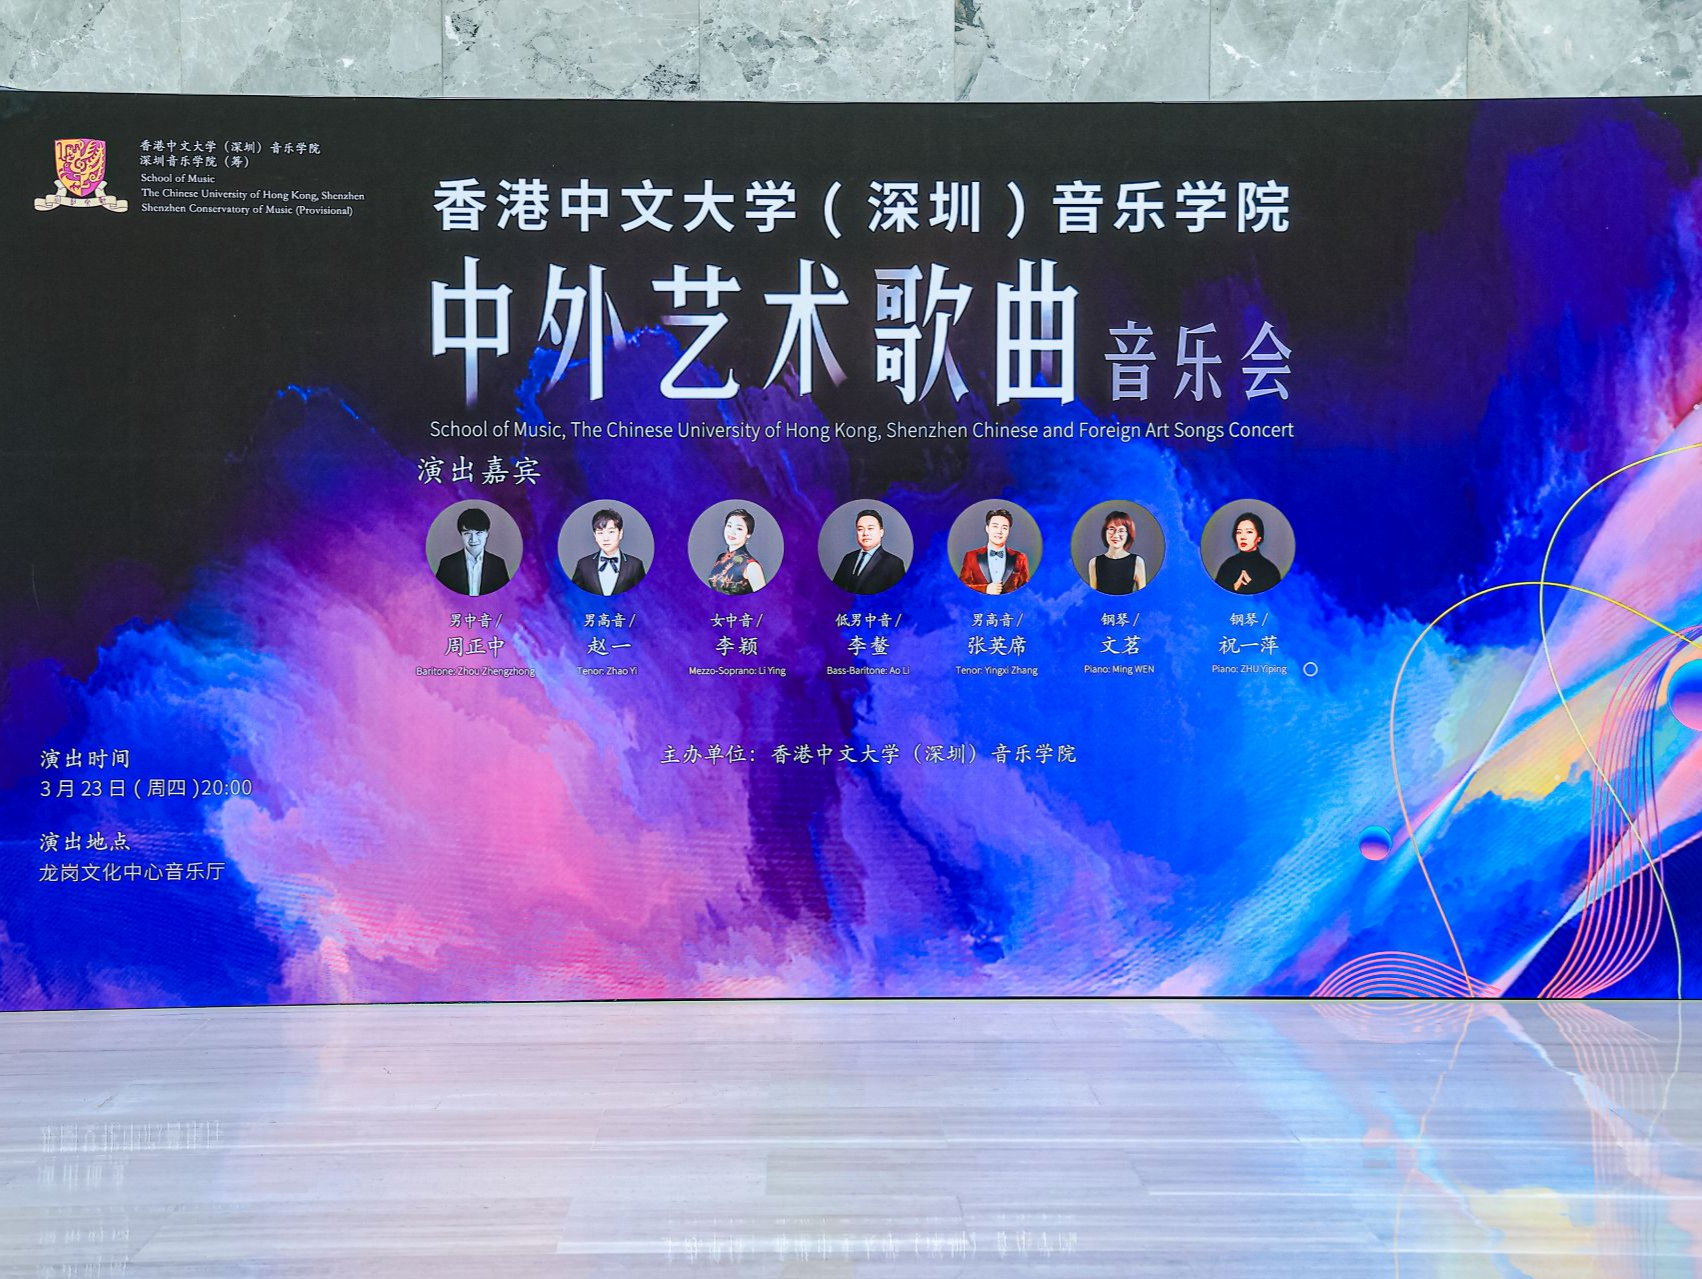 中外艺术歌曲音乐会在深圳龙岗文化中心音乐厅上演